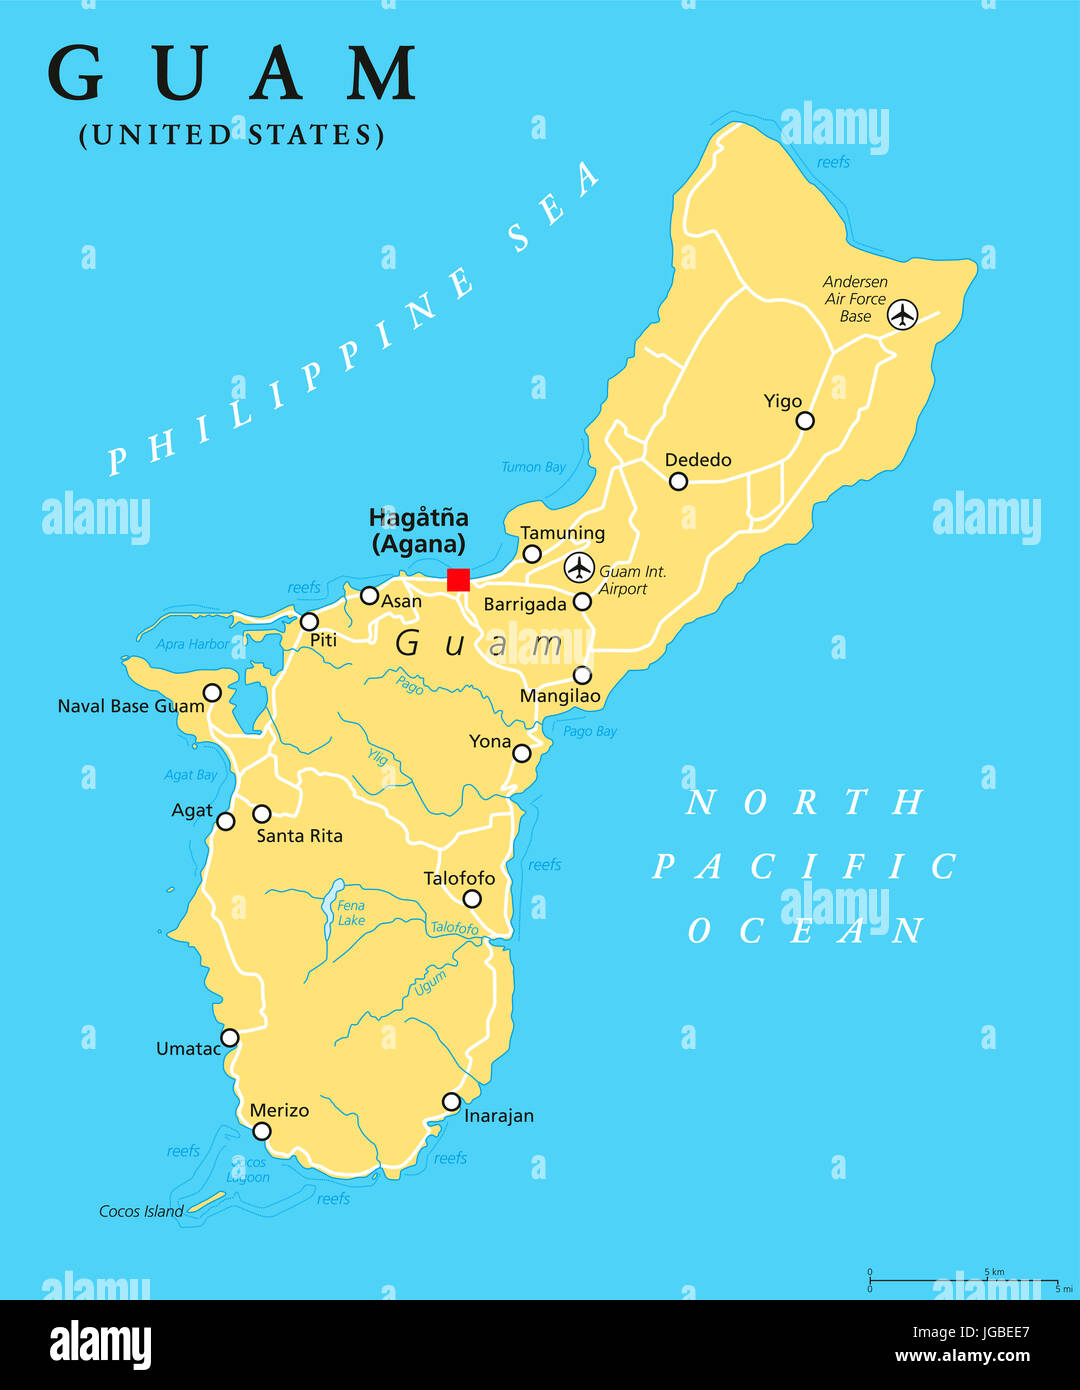 Guam mappa politico con capitale Hagatna, Agana. Non costituite in società organizzata, il territorio degli Stati Uniti nell'Oceano Pacifico. Isole Mariana. Foto Stock